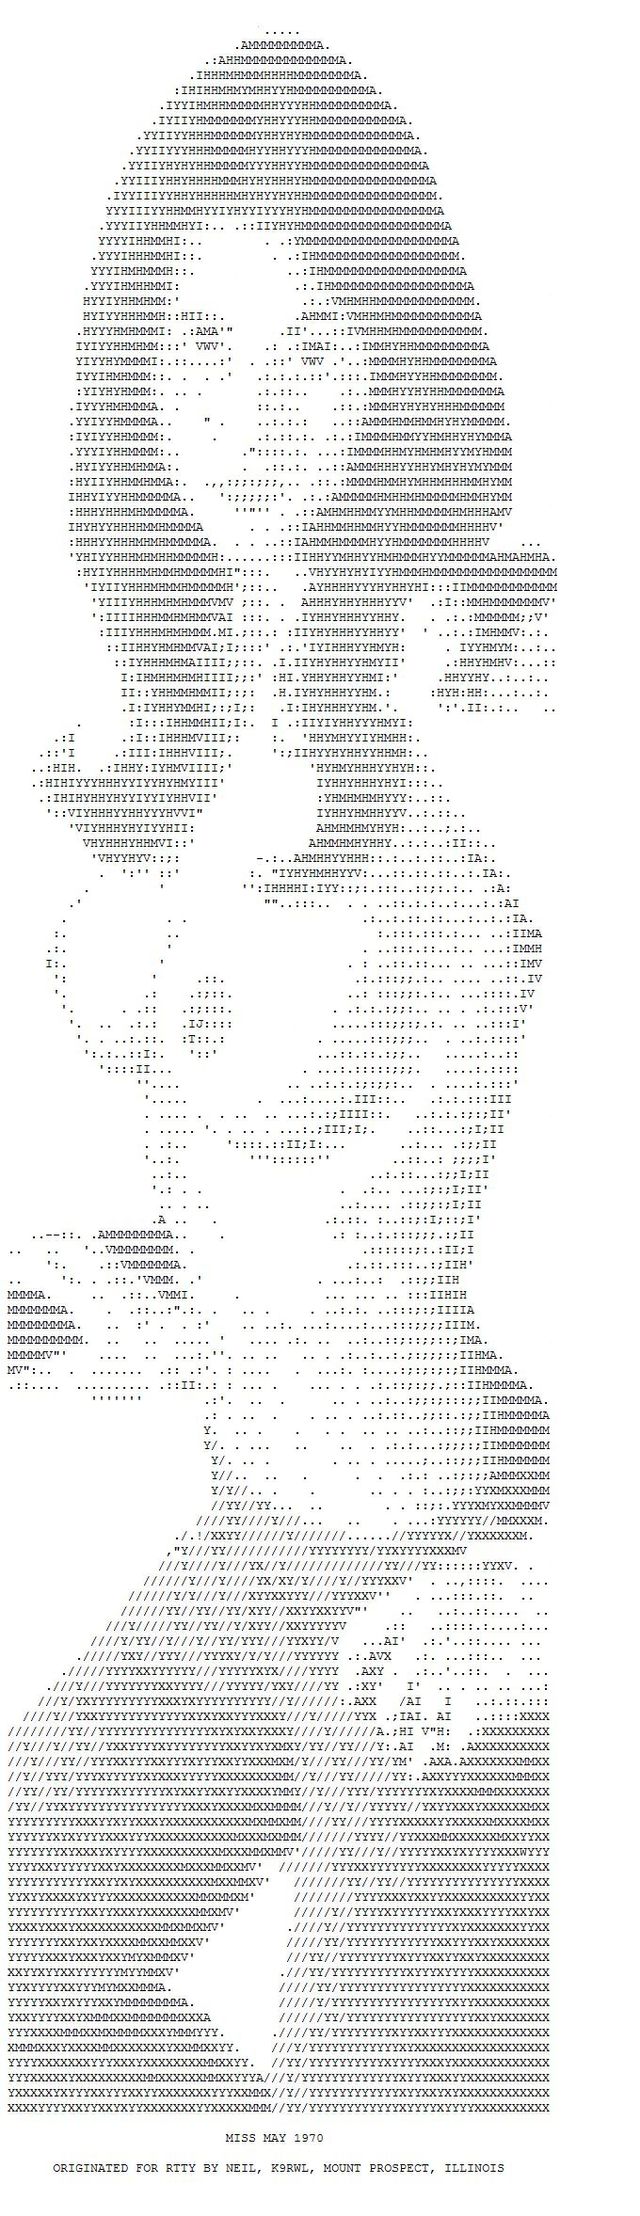 ASCII erotic images - 17